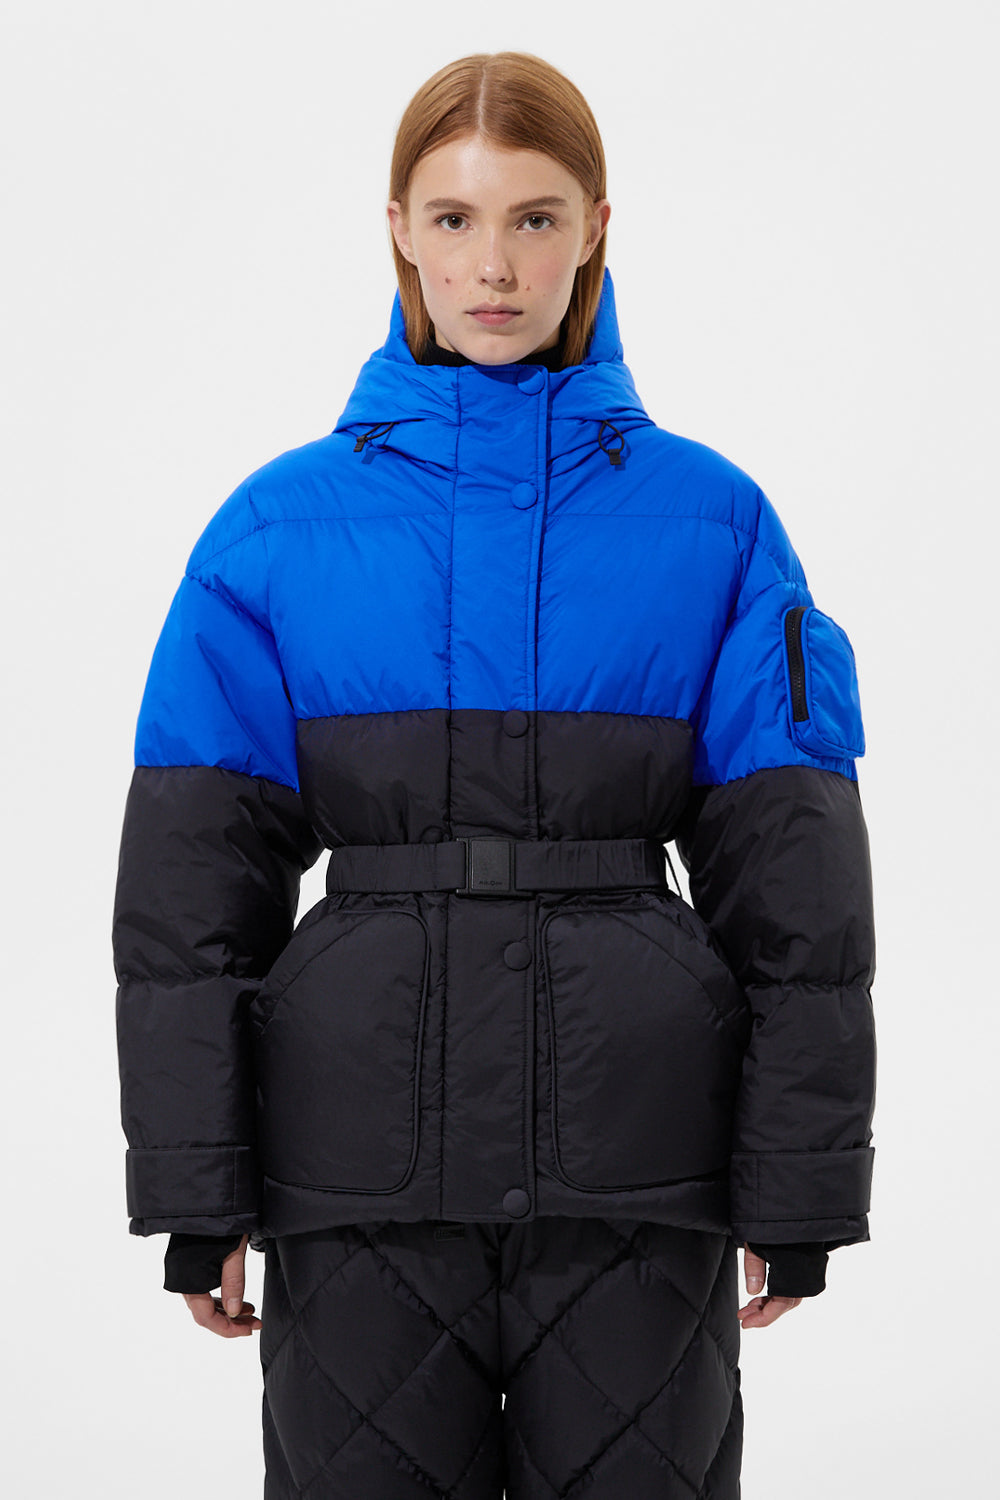 Apres Ski Michlin Jacket Tec Blue + Tec Black